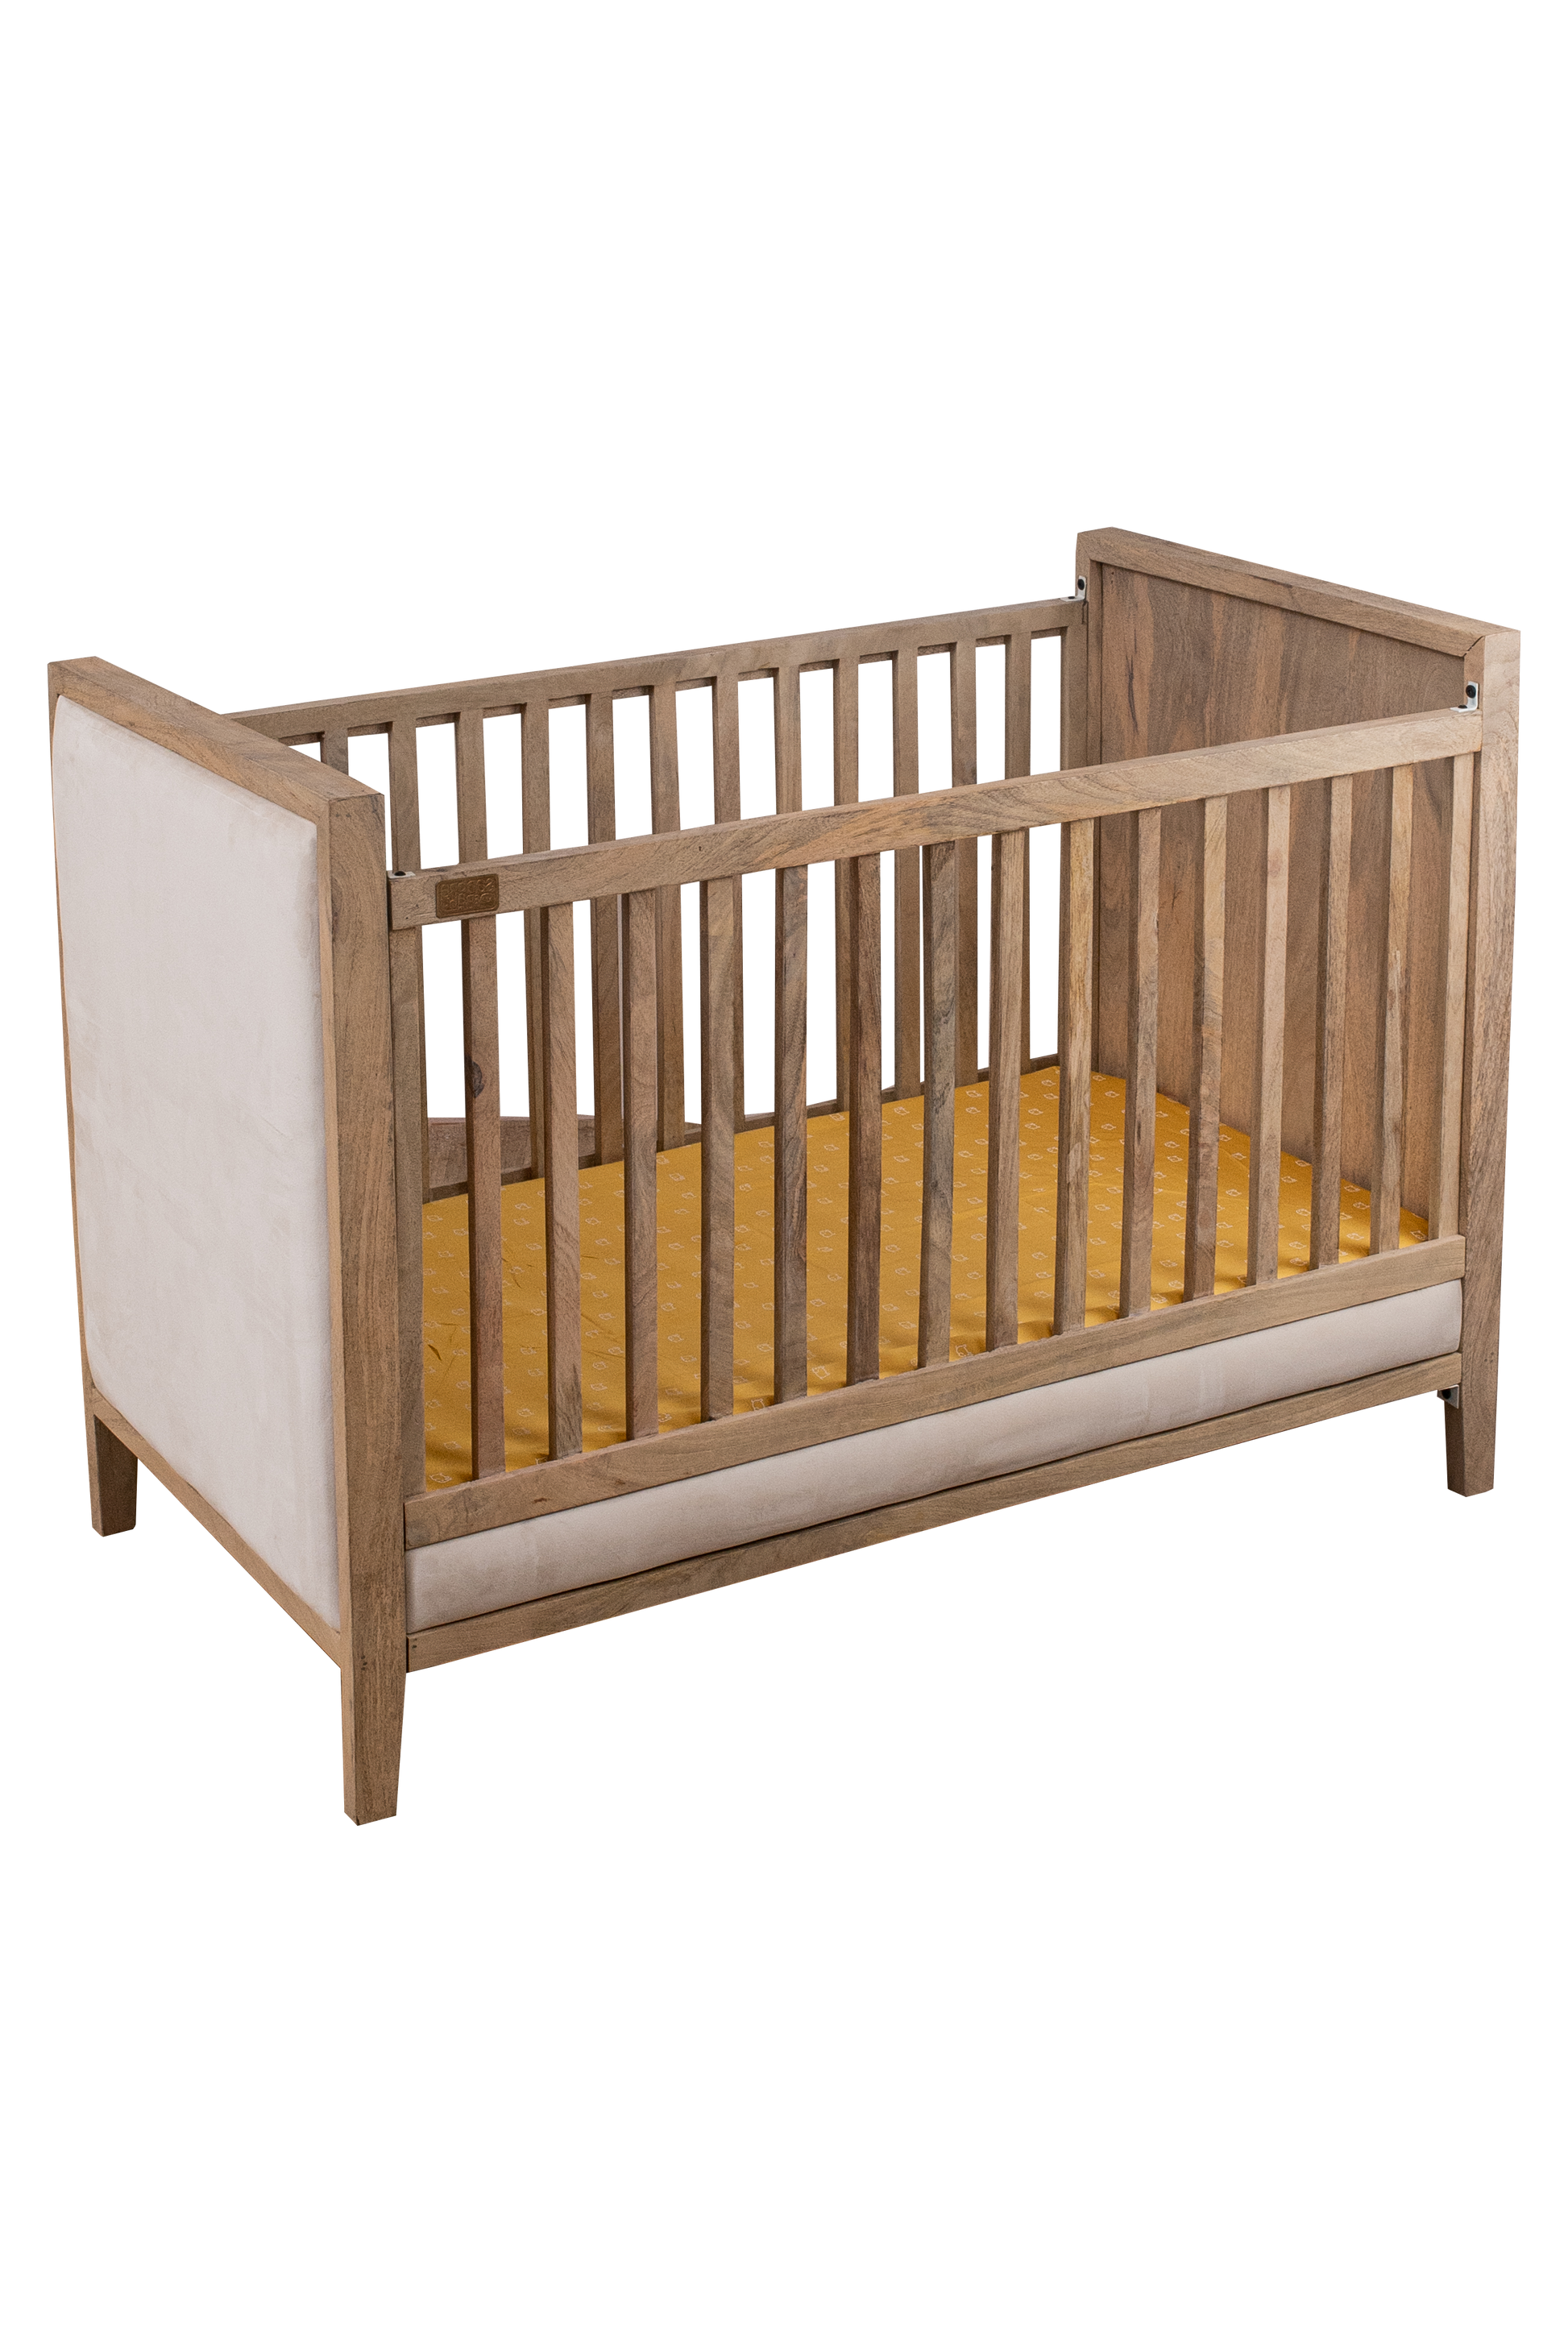 Buy Wooden Baby Cot With Velvet Upholstery - Oat Finish Online - SkilloToys.com